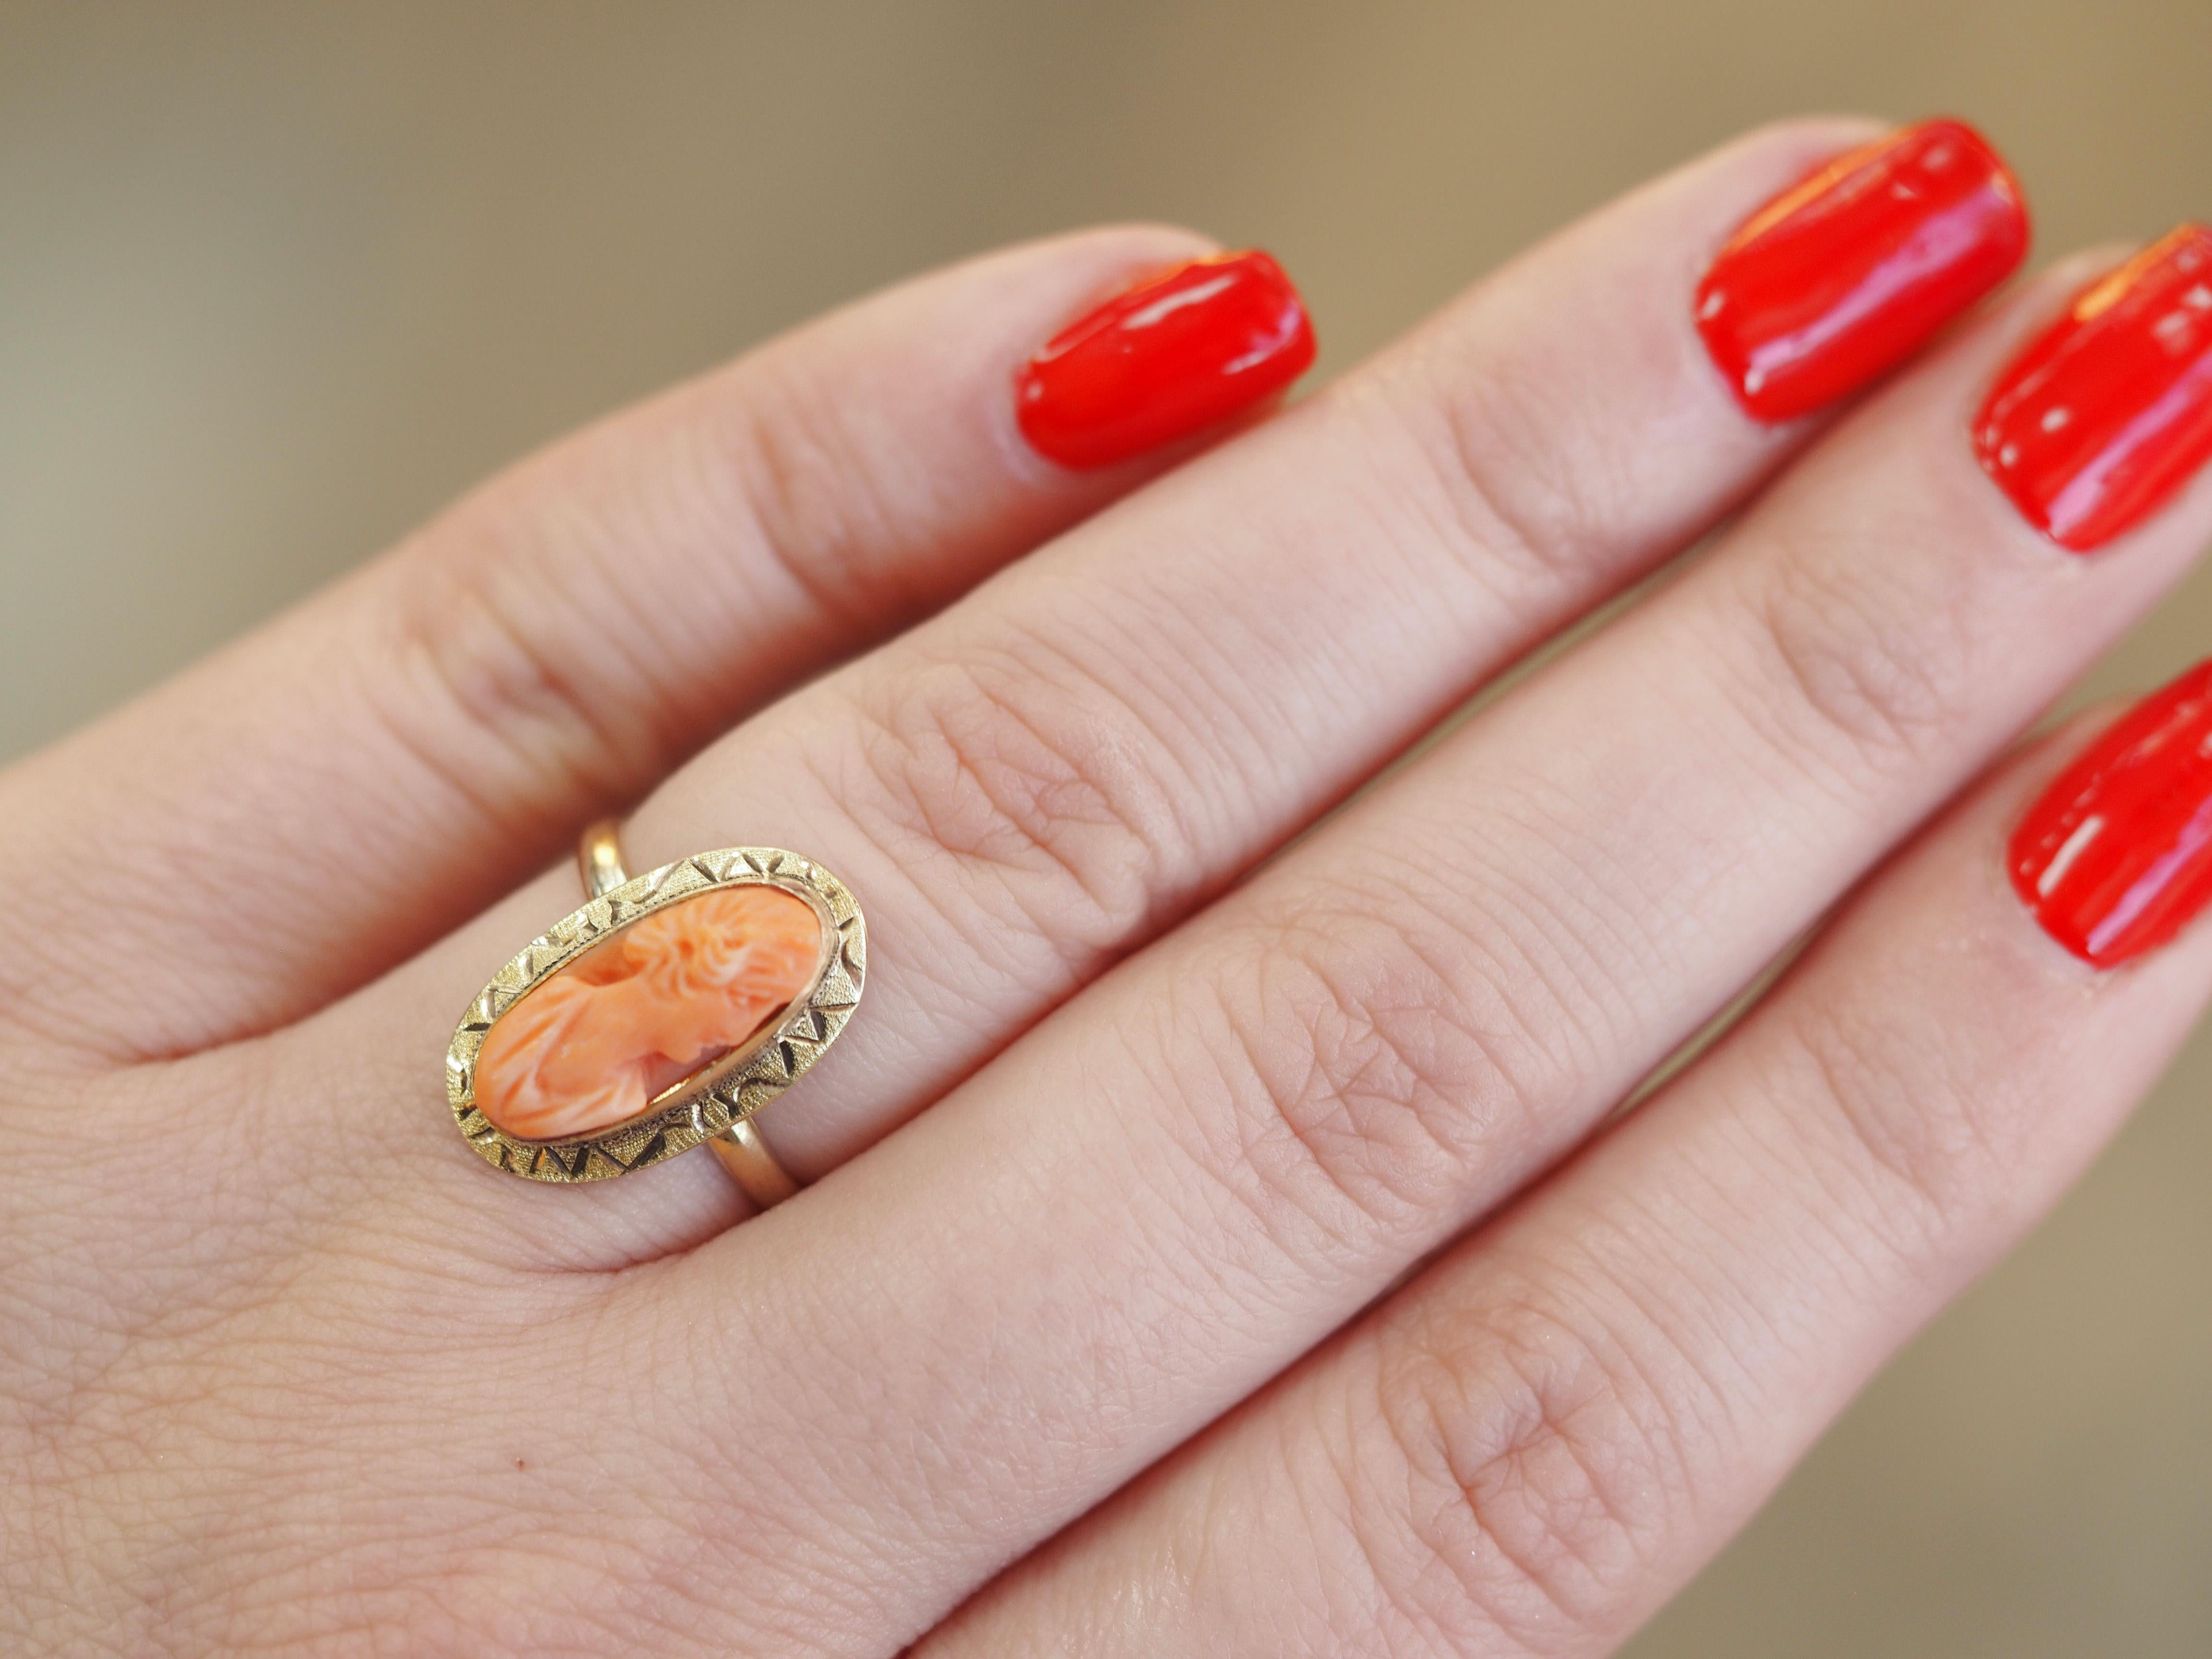 Dieser kunstvoll geschnitzte Muschelkameenring aus 10 Karat Gelbgold ist ebenso atemberaubend wie einzigartig! Diese Ringe aus Gelbgold sind seltener zu finden, und dieser ist in hervorragendem Zustand! Die sehen auch super süß aus, wenn man sie mit